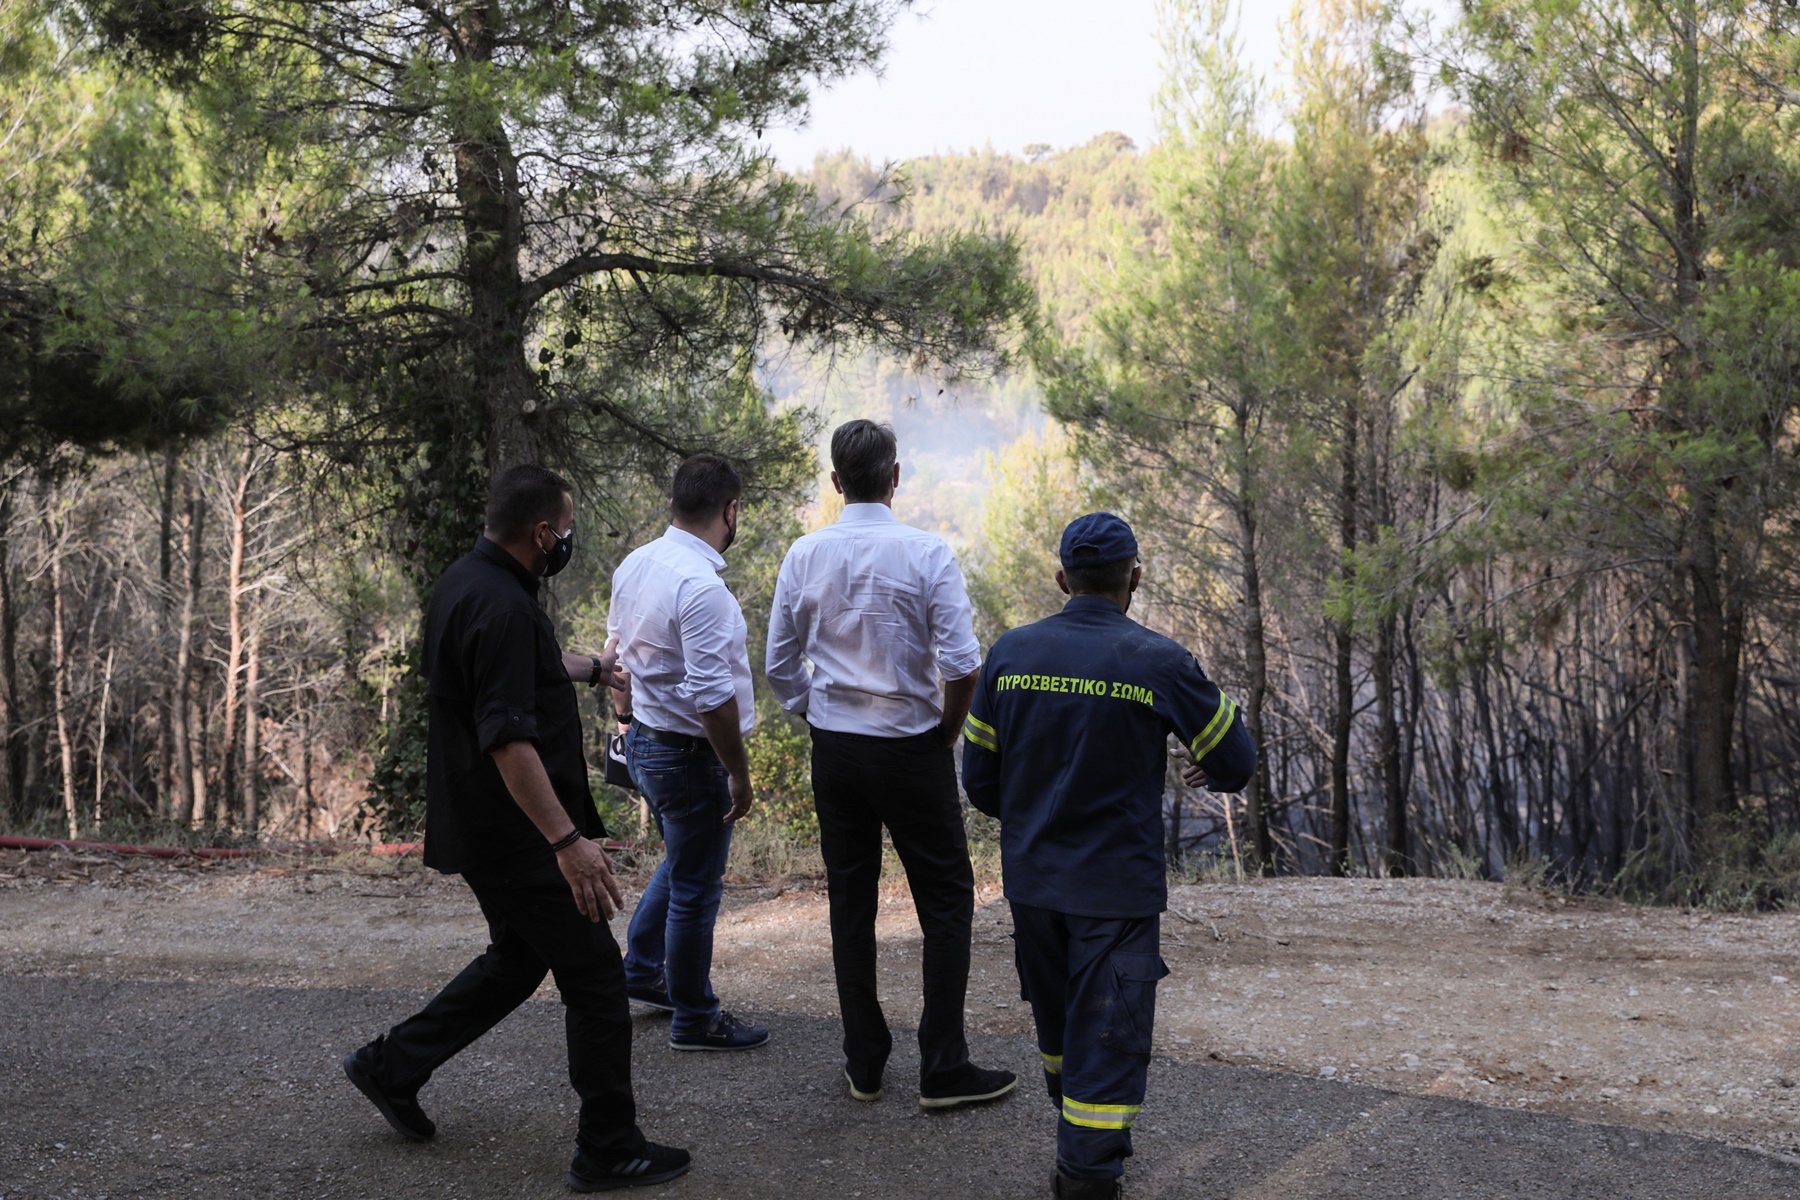 Σύσκεψη για φωτιές – Μητσοτάκης: Όσα αποφασίστηκαν, ανακοινώσεις για μέτρα στήριξης